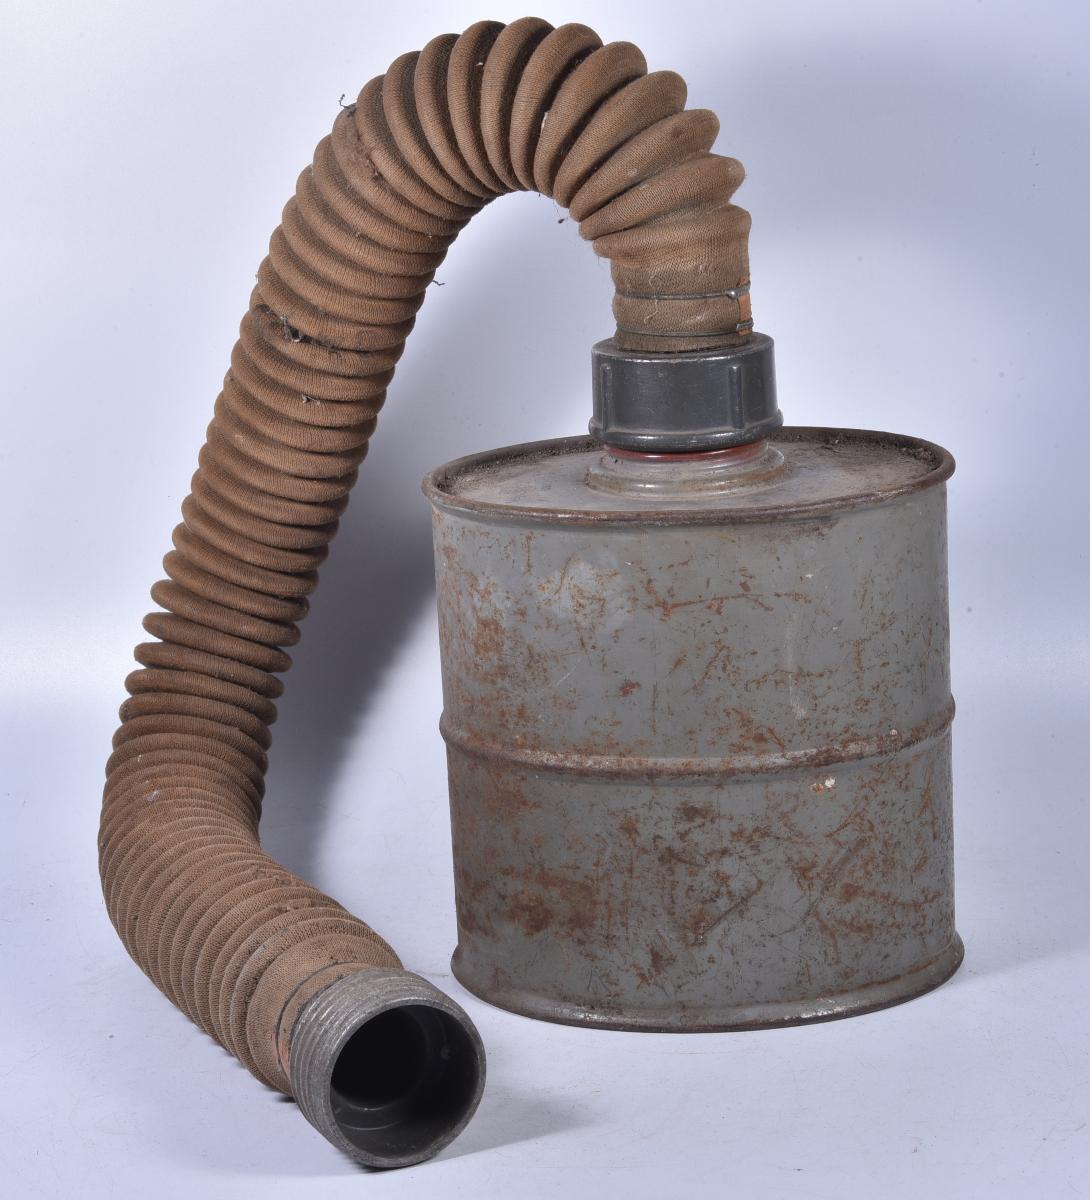 Filter k plynovej maske, česká armáda, prvá republika, 1938 - Zberateľstvo